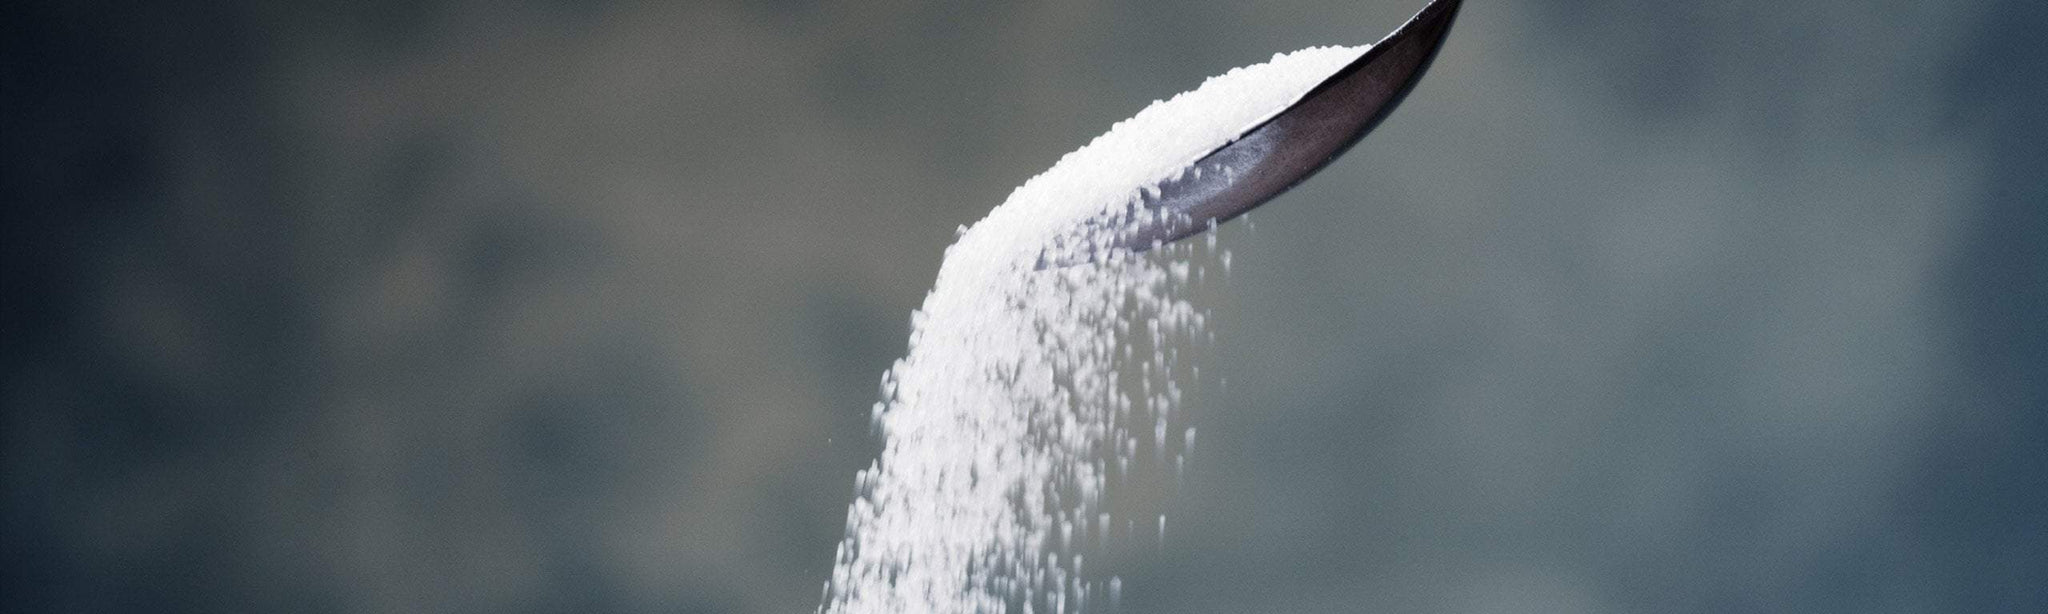 Understanding sugar: uncovering its hidden secrets